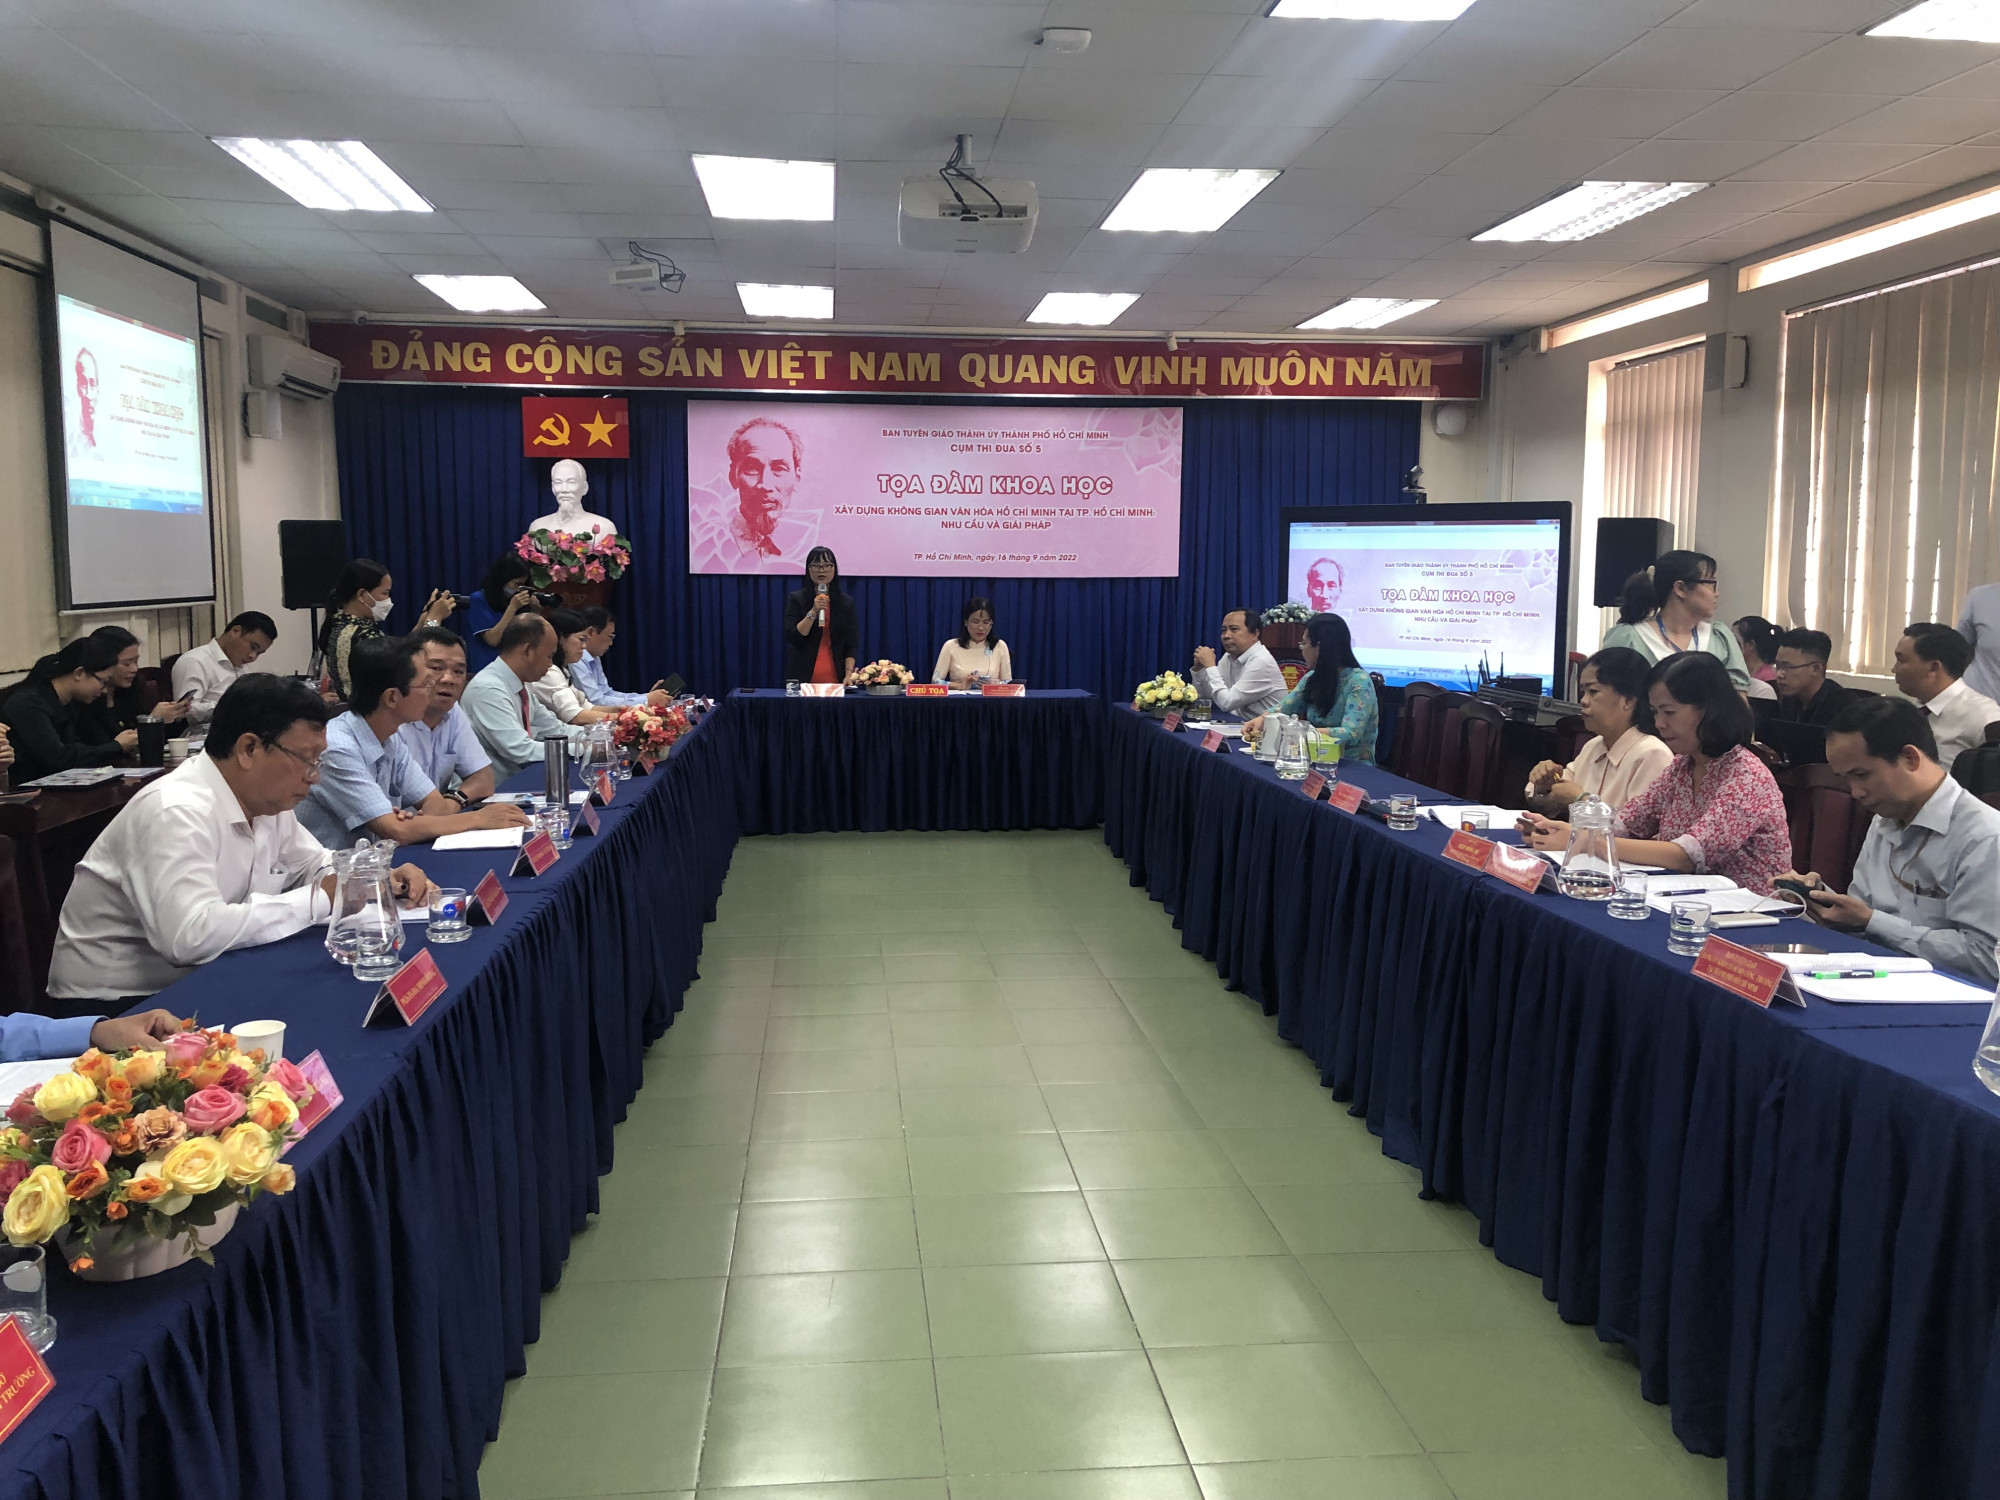 Tọa đàm khoa học “Xây dựng không gian văn hóa Hồ Chí Minh tại TPHCM: nhu cầu và giải pháp” diễn ra ngày 16/9 tại TPHCM. Ảnh: Quốc Ngọc